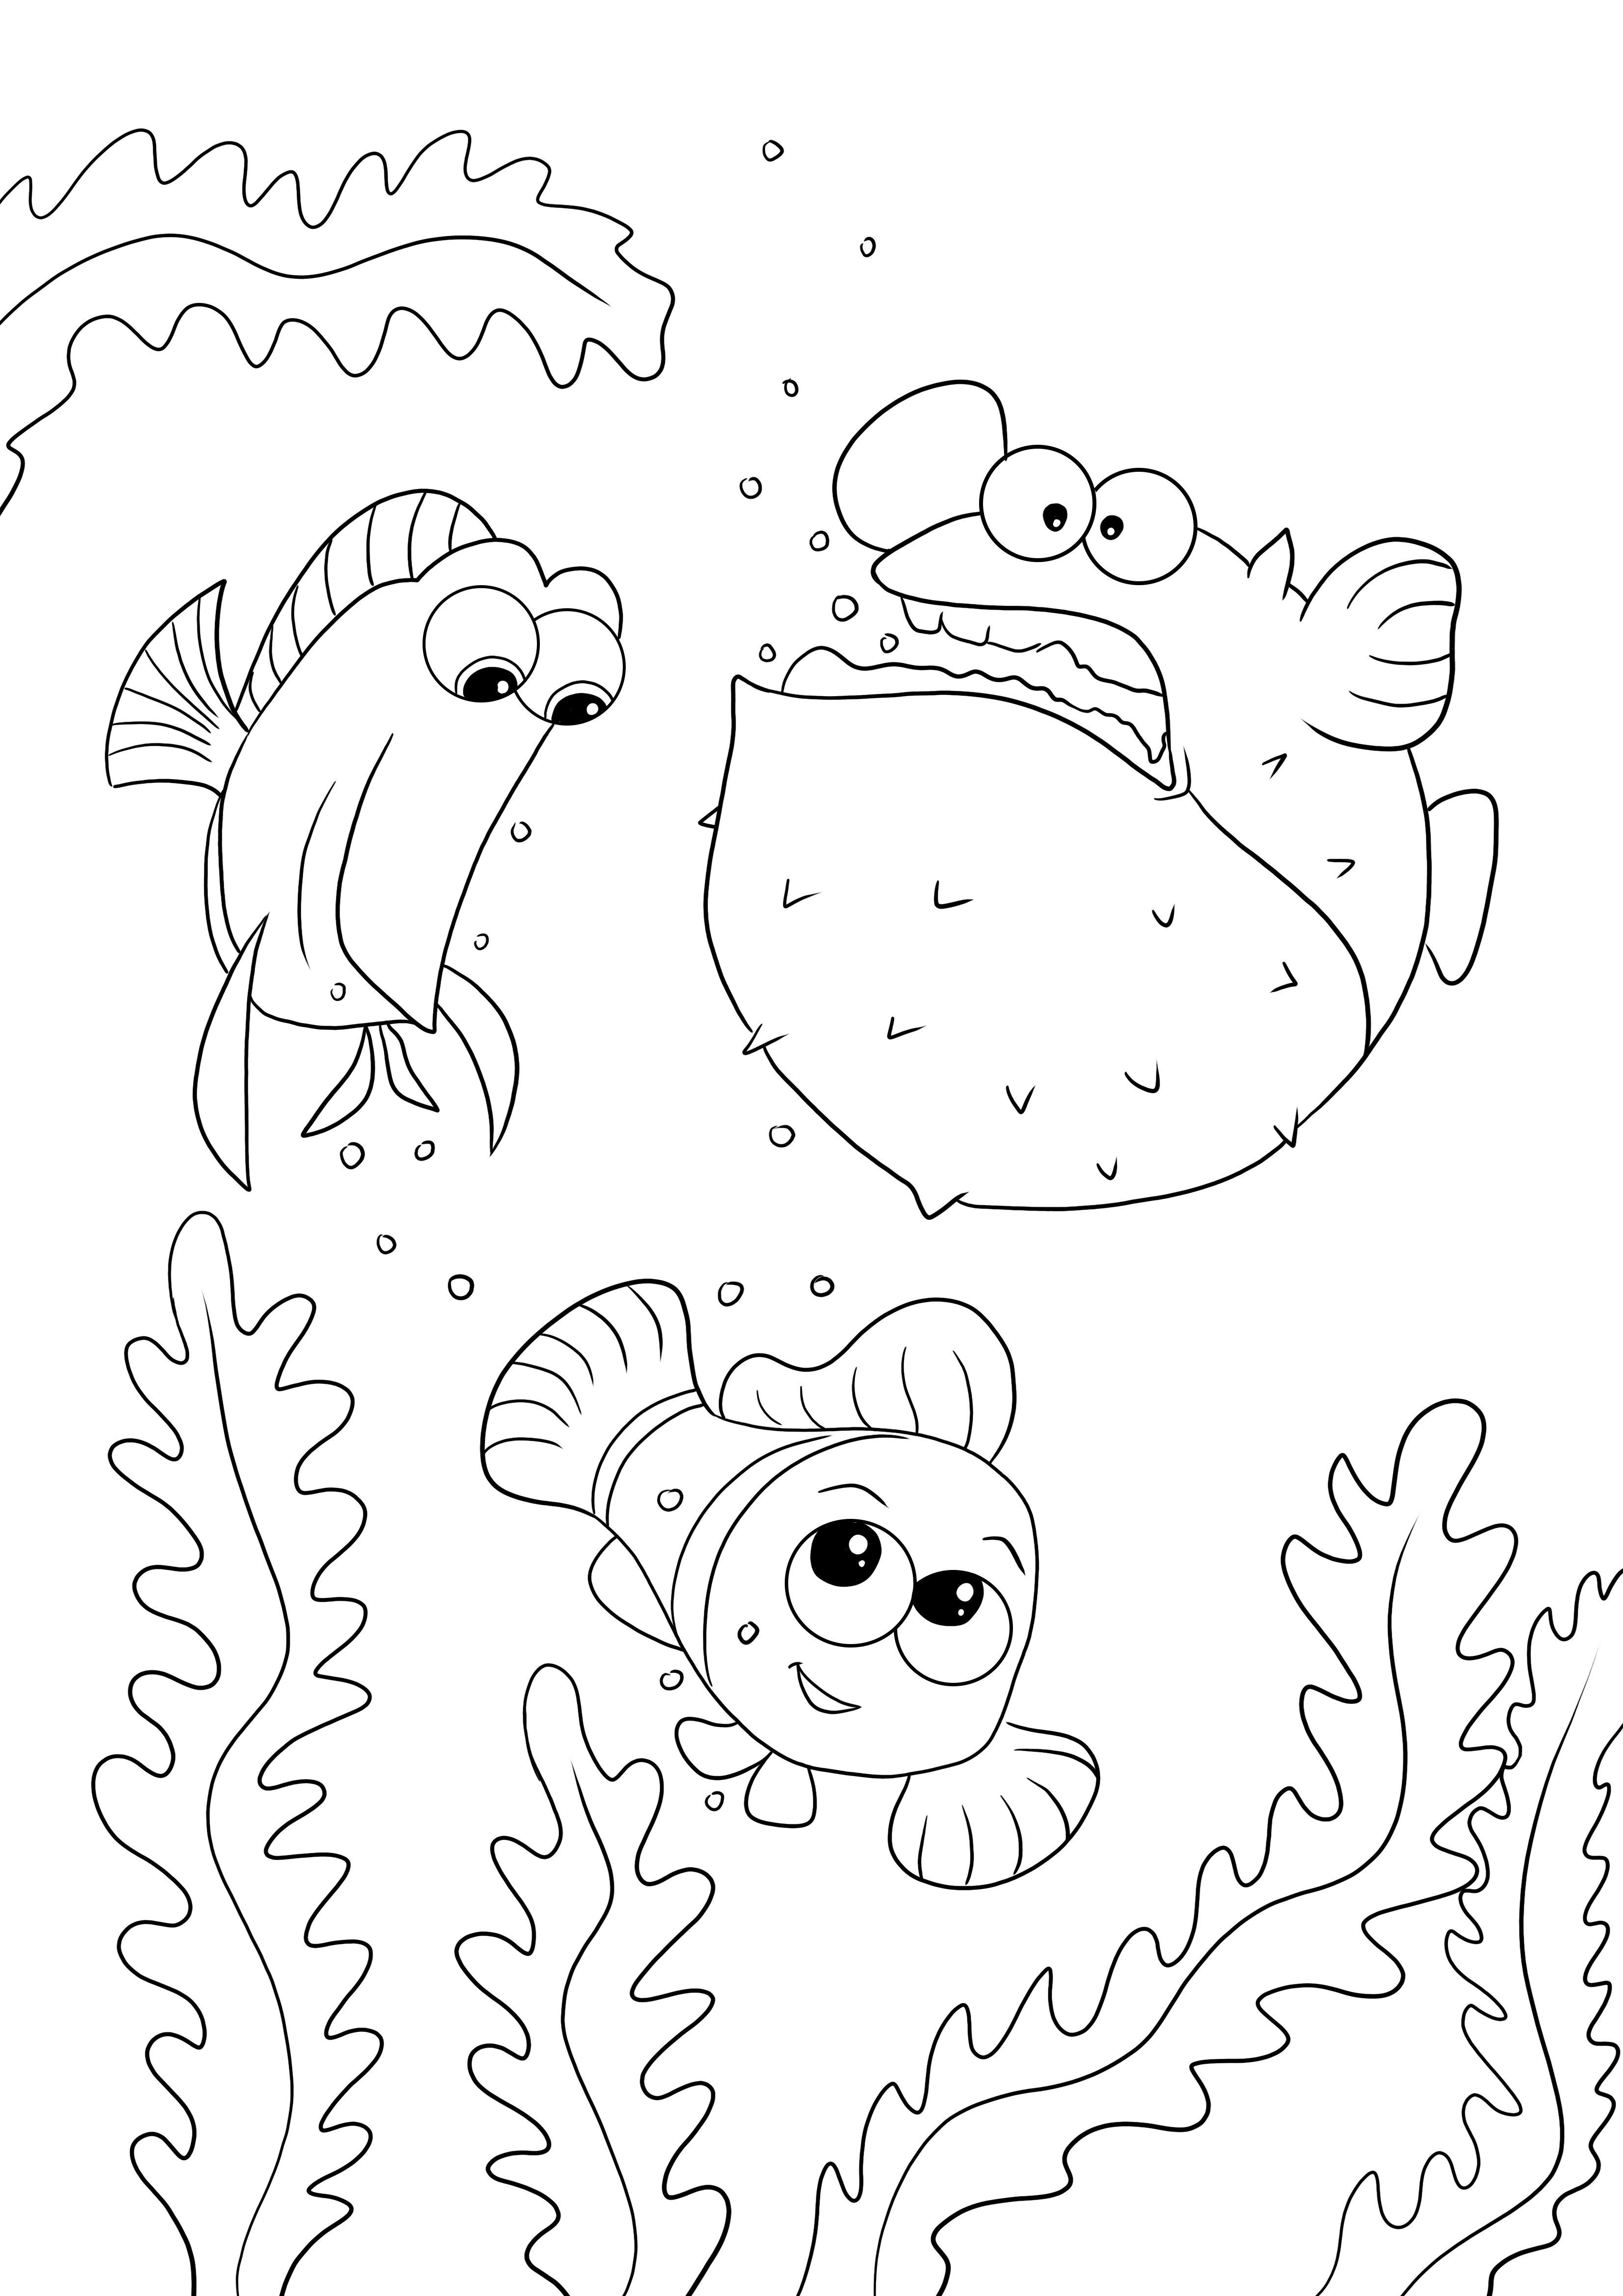 Dibujo para colorear gratis de Tang Gang-Dory-Nemo para niños de todas las edades